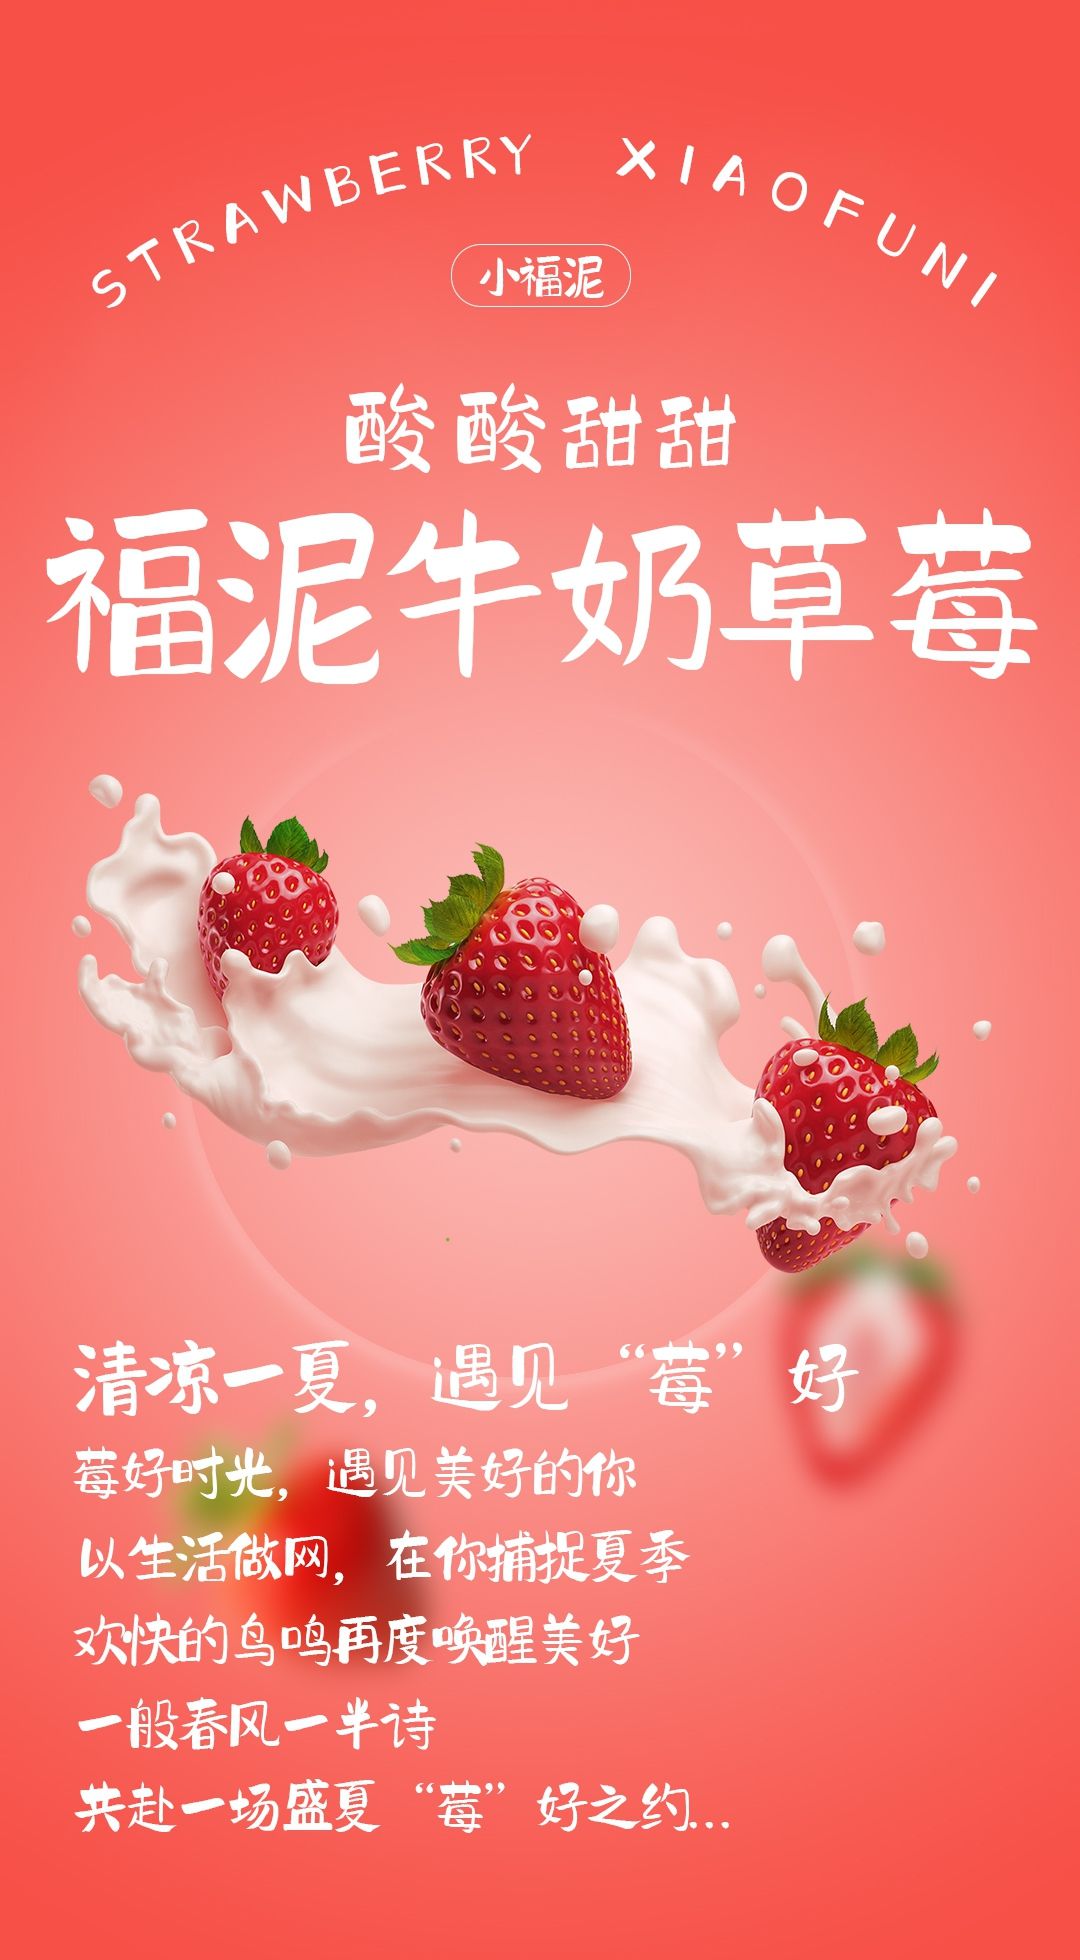 牛奶草莓海报设计 飞特网 会员原创海报设计